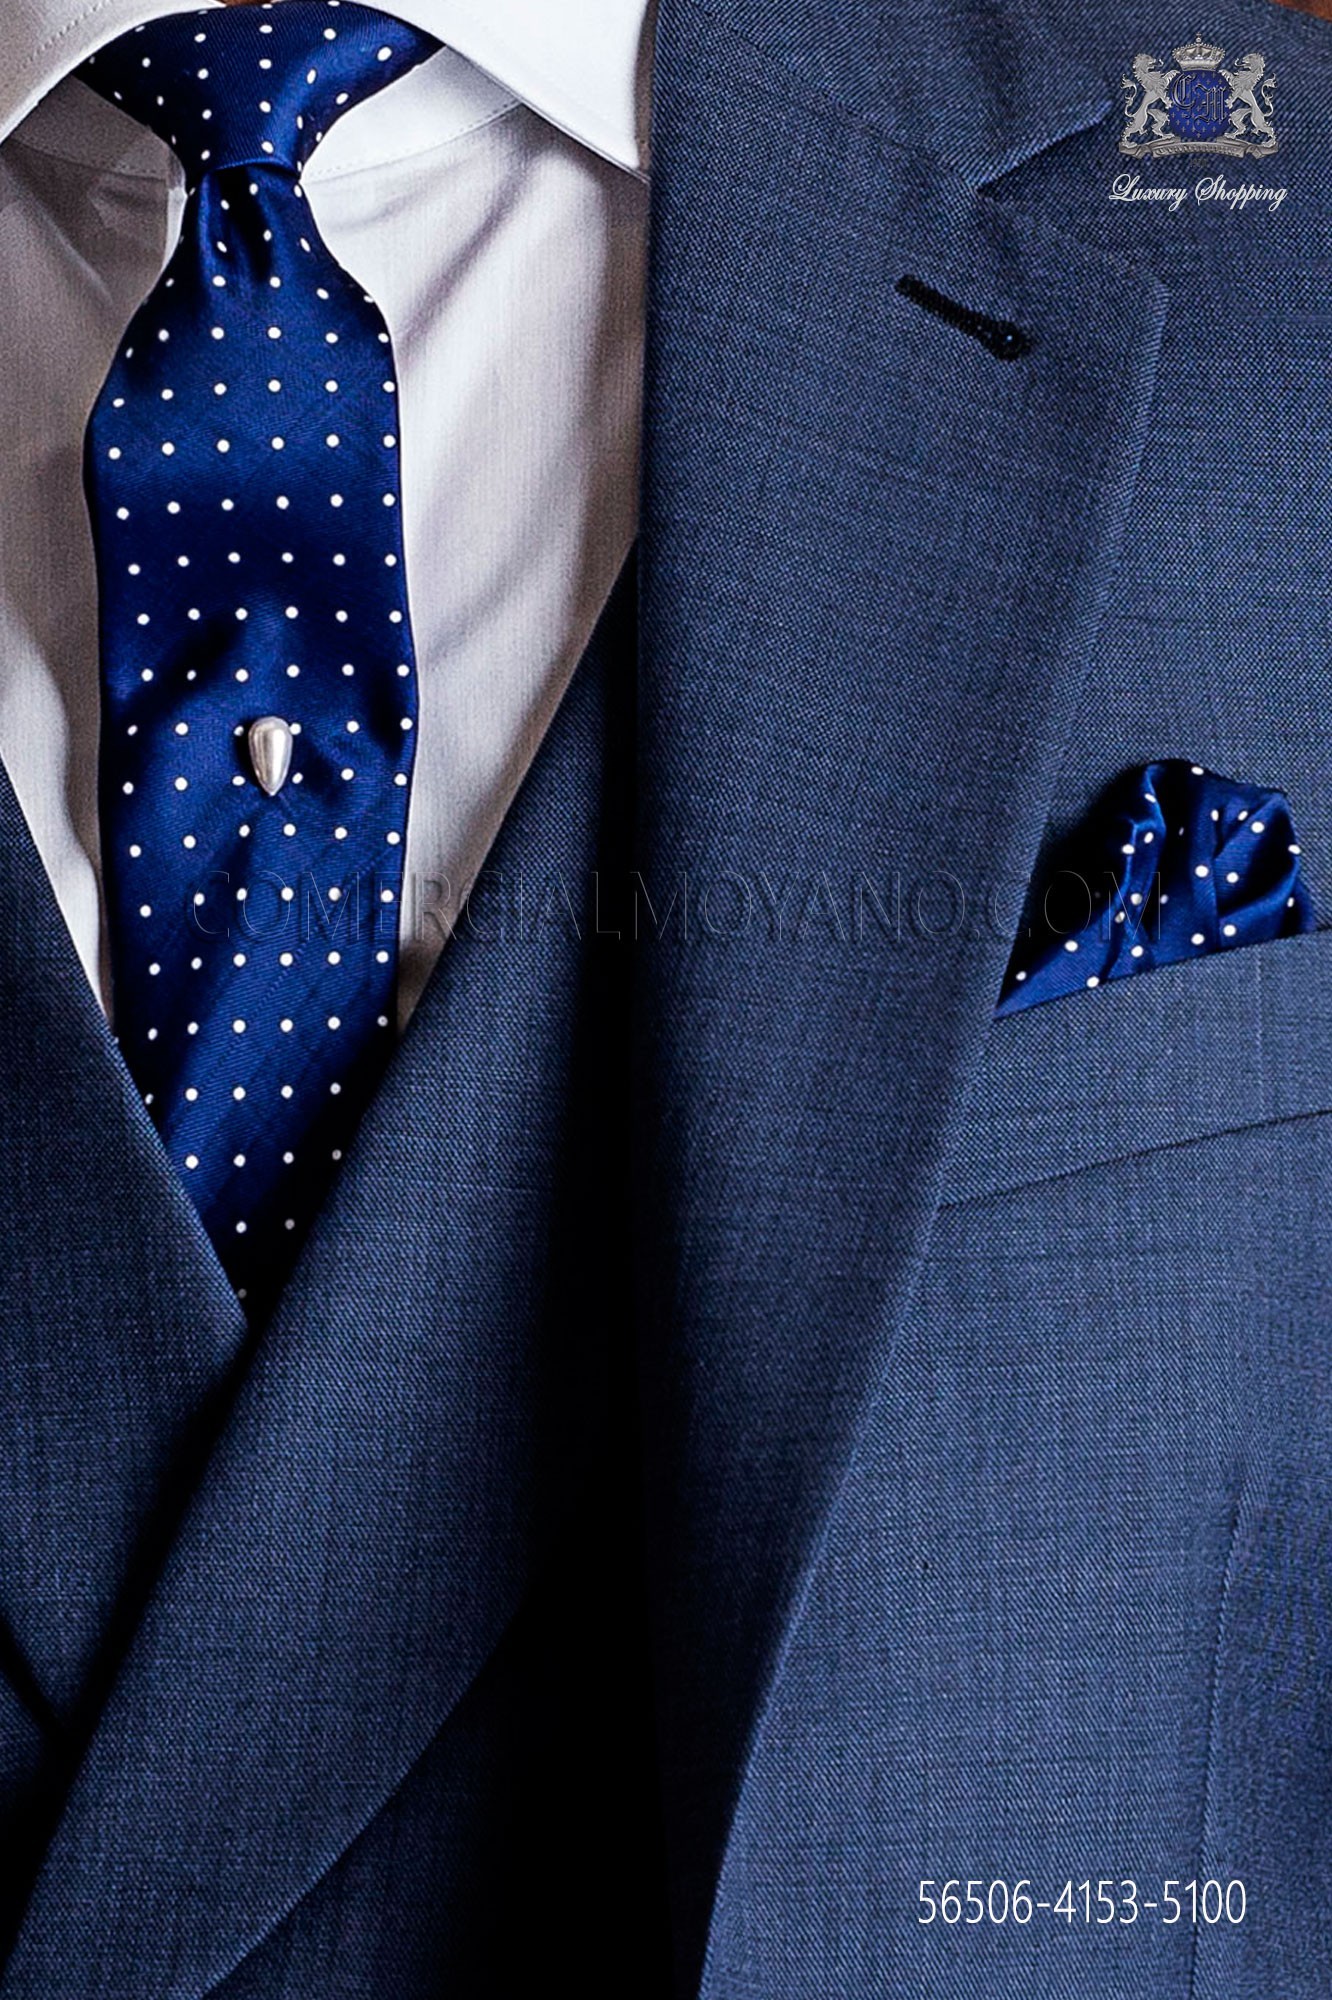 Ambicioso Disipar Respetuoso Corbata estrecha con pañuelo de bolsillo azul de topos blancos MMMoyano.